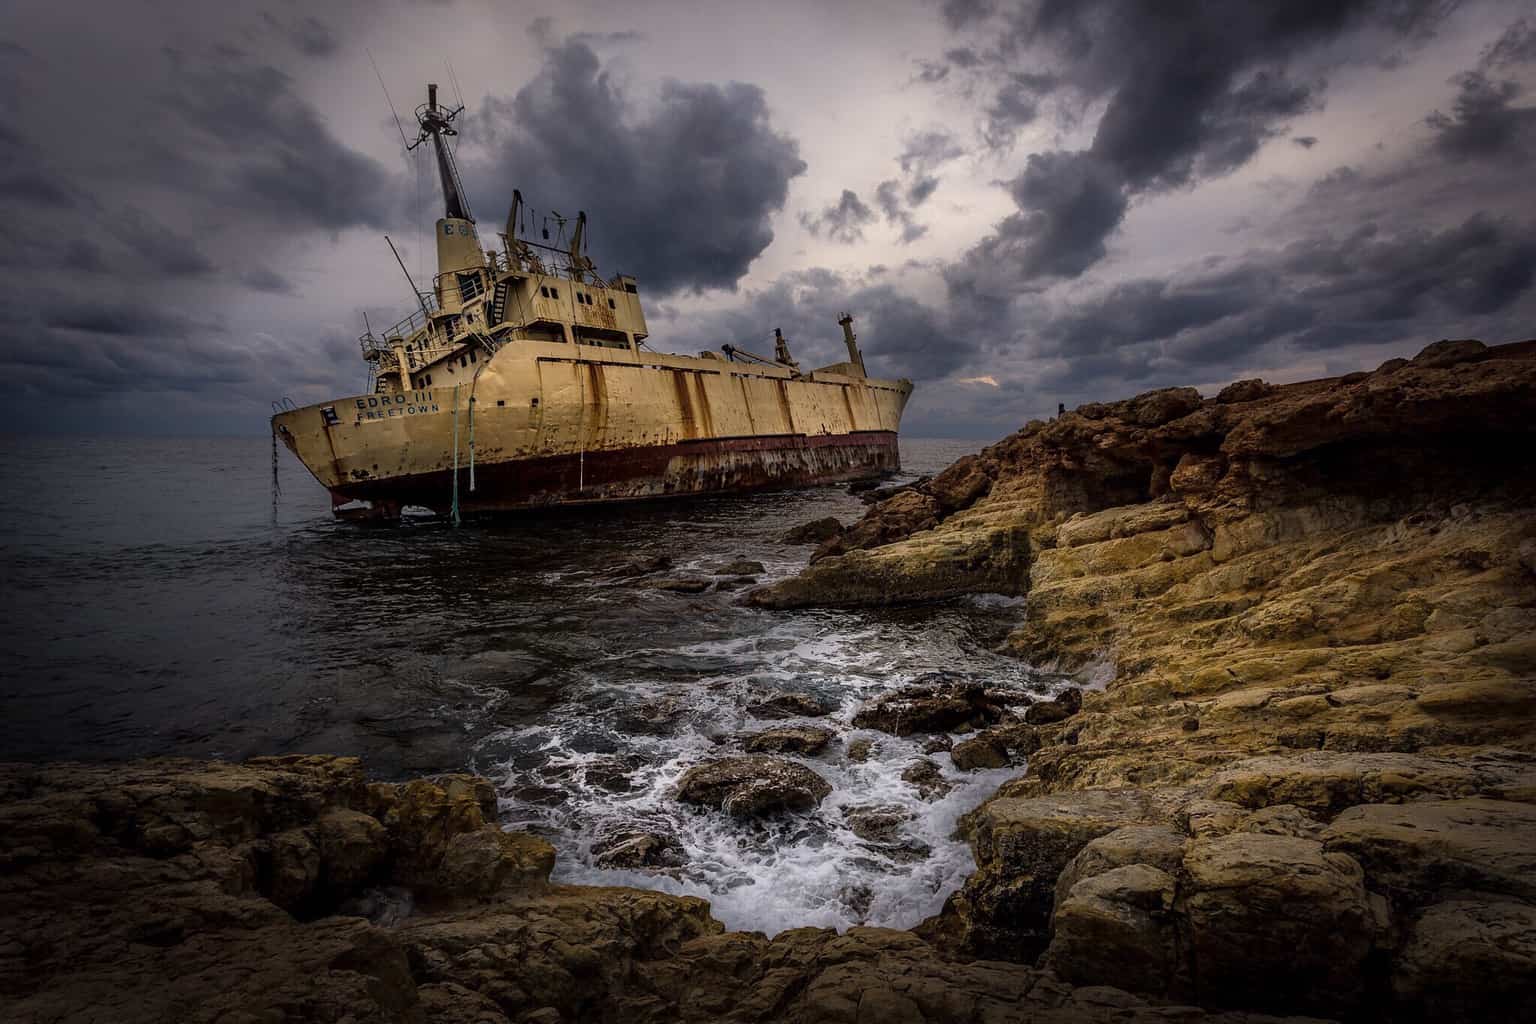  Shipwreck, Cyprus, by Rick McEvoy landscape photography   